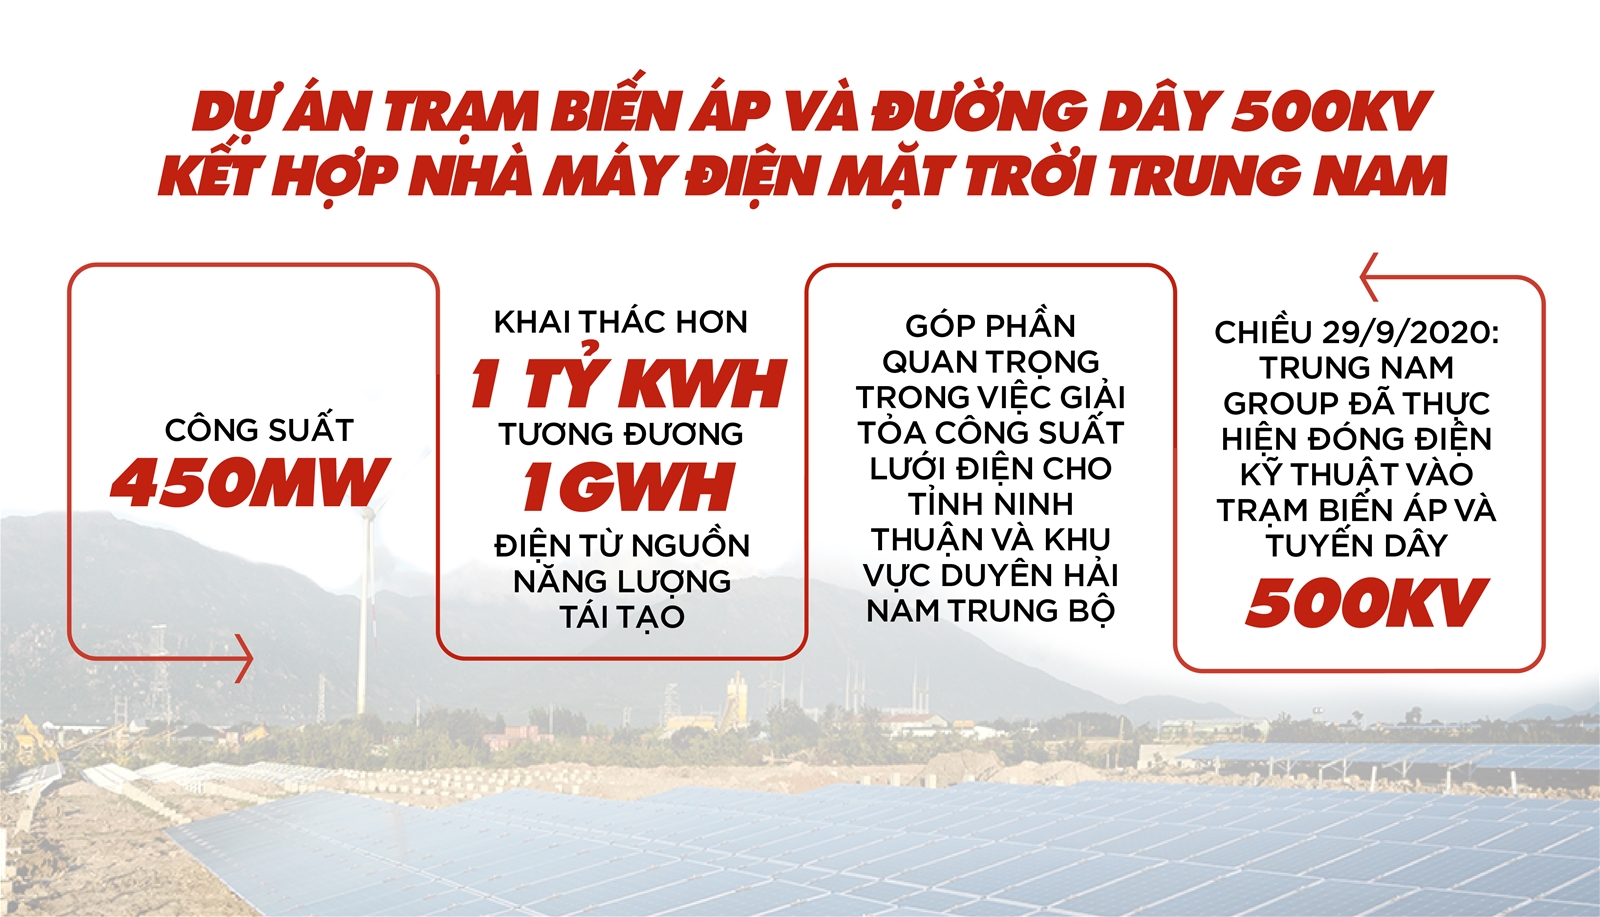 Tập đoàn Trung Nam   “Người tạo dấu ấn lịch sử” trong điện mặt trời!